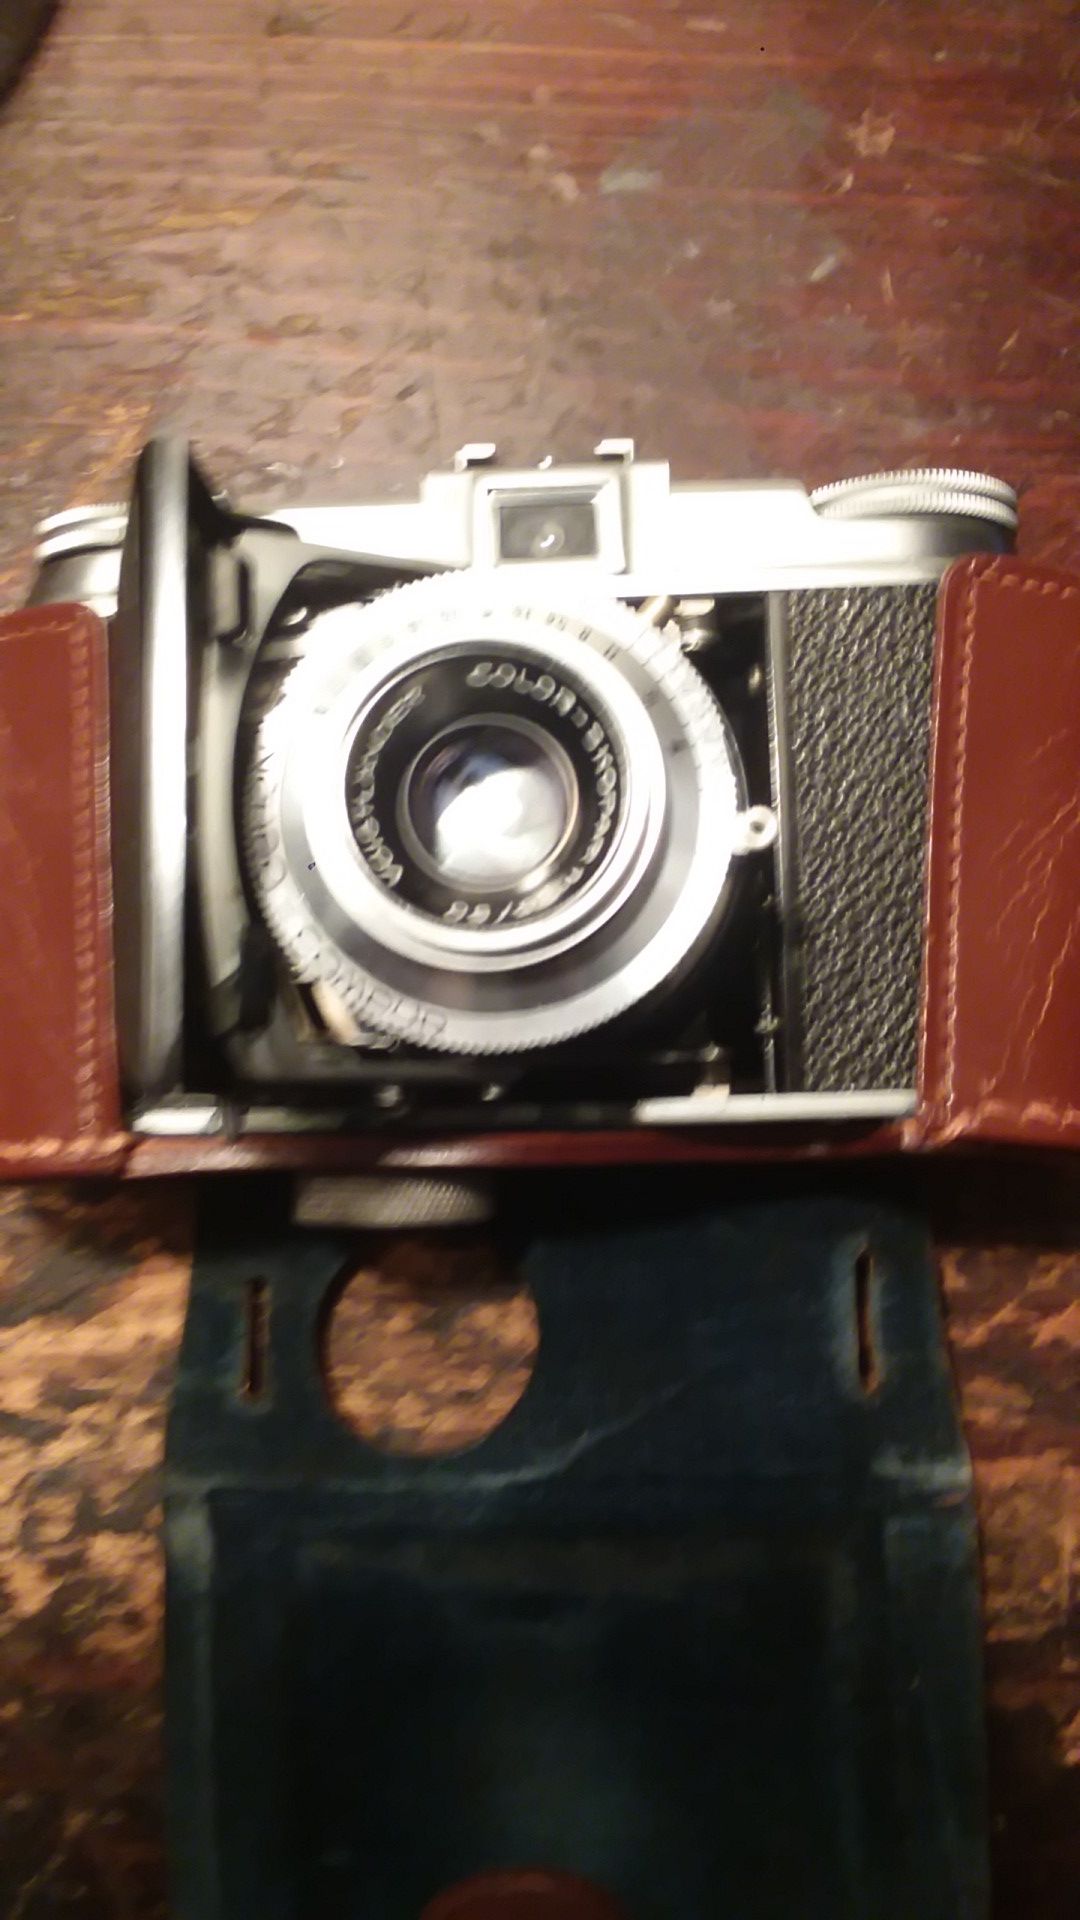 Vito 2 voigtlander 35 mm camera with case.